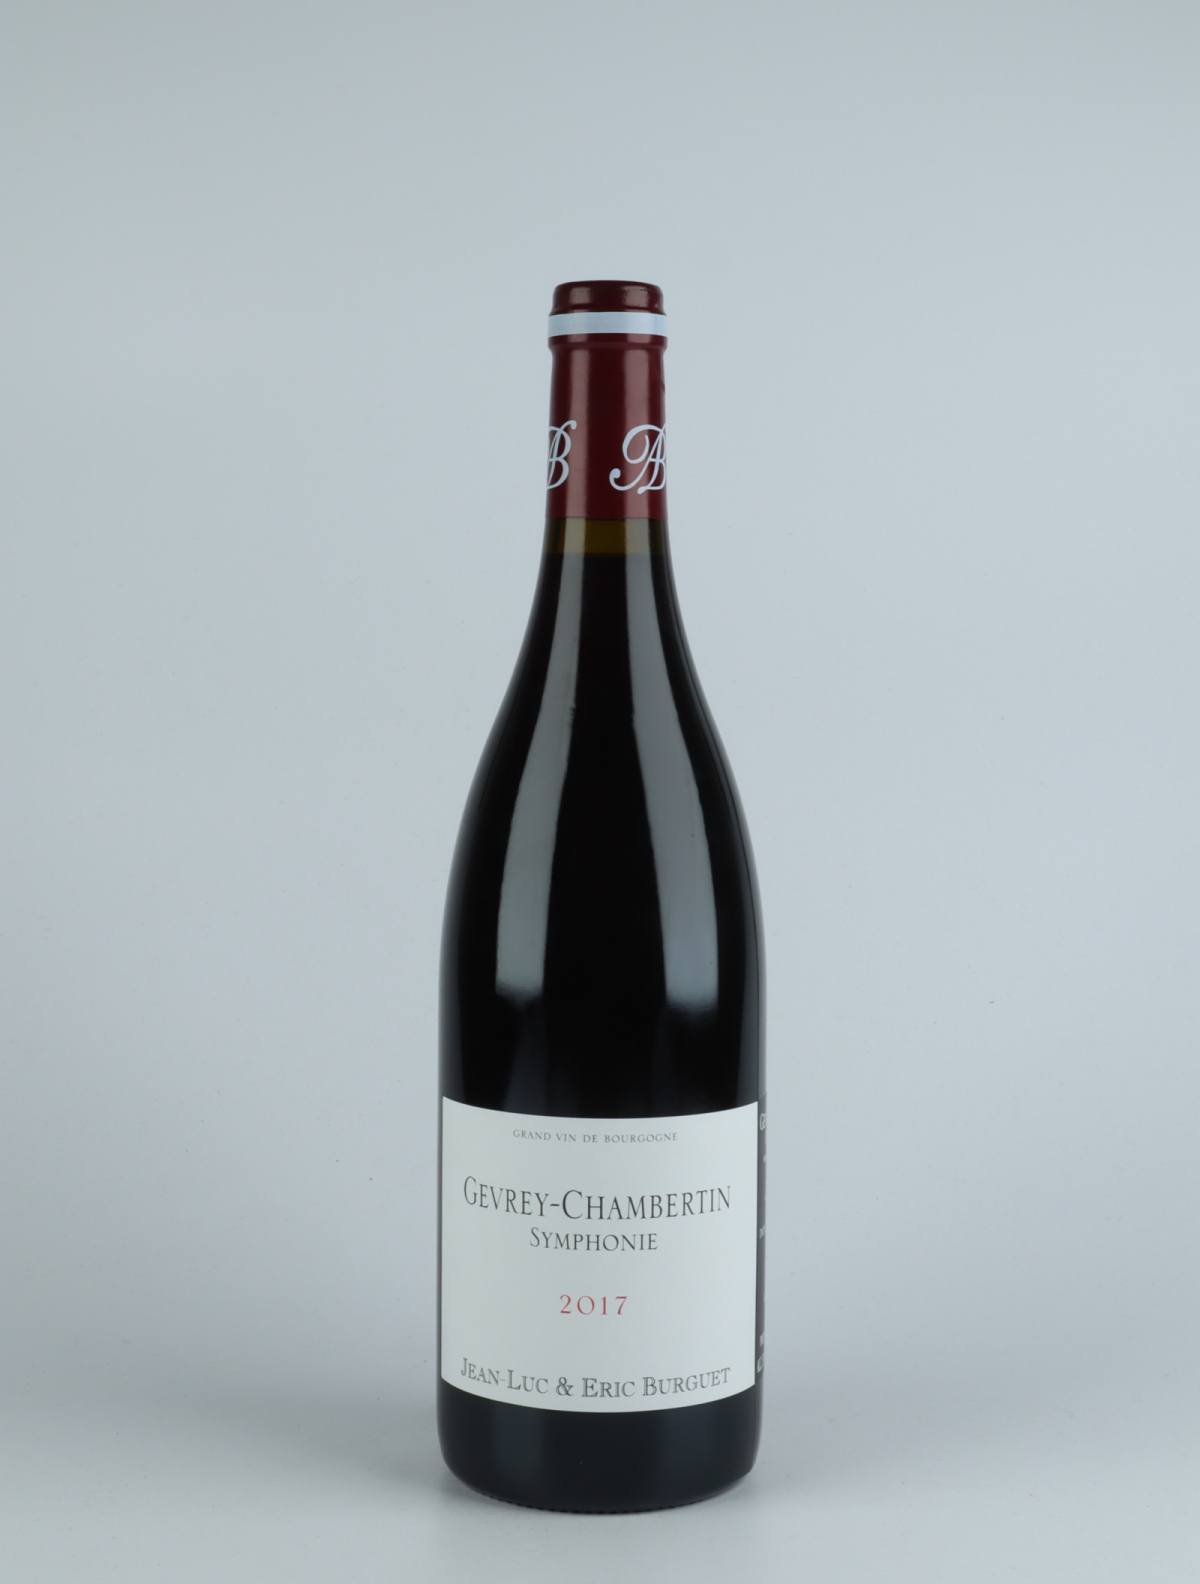 En flaske 2017 Gevrey-Chambertin - Symphonie Rødvin fra Jean-Luc & Eric Burguet, Bourgogne i Frankrig